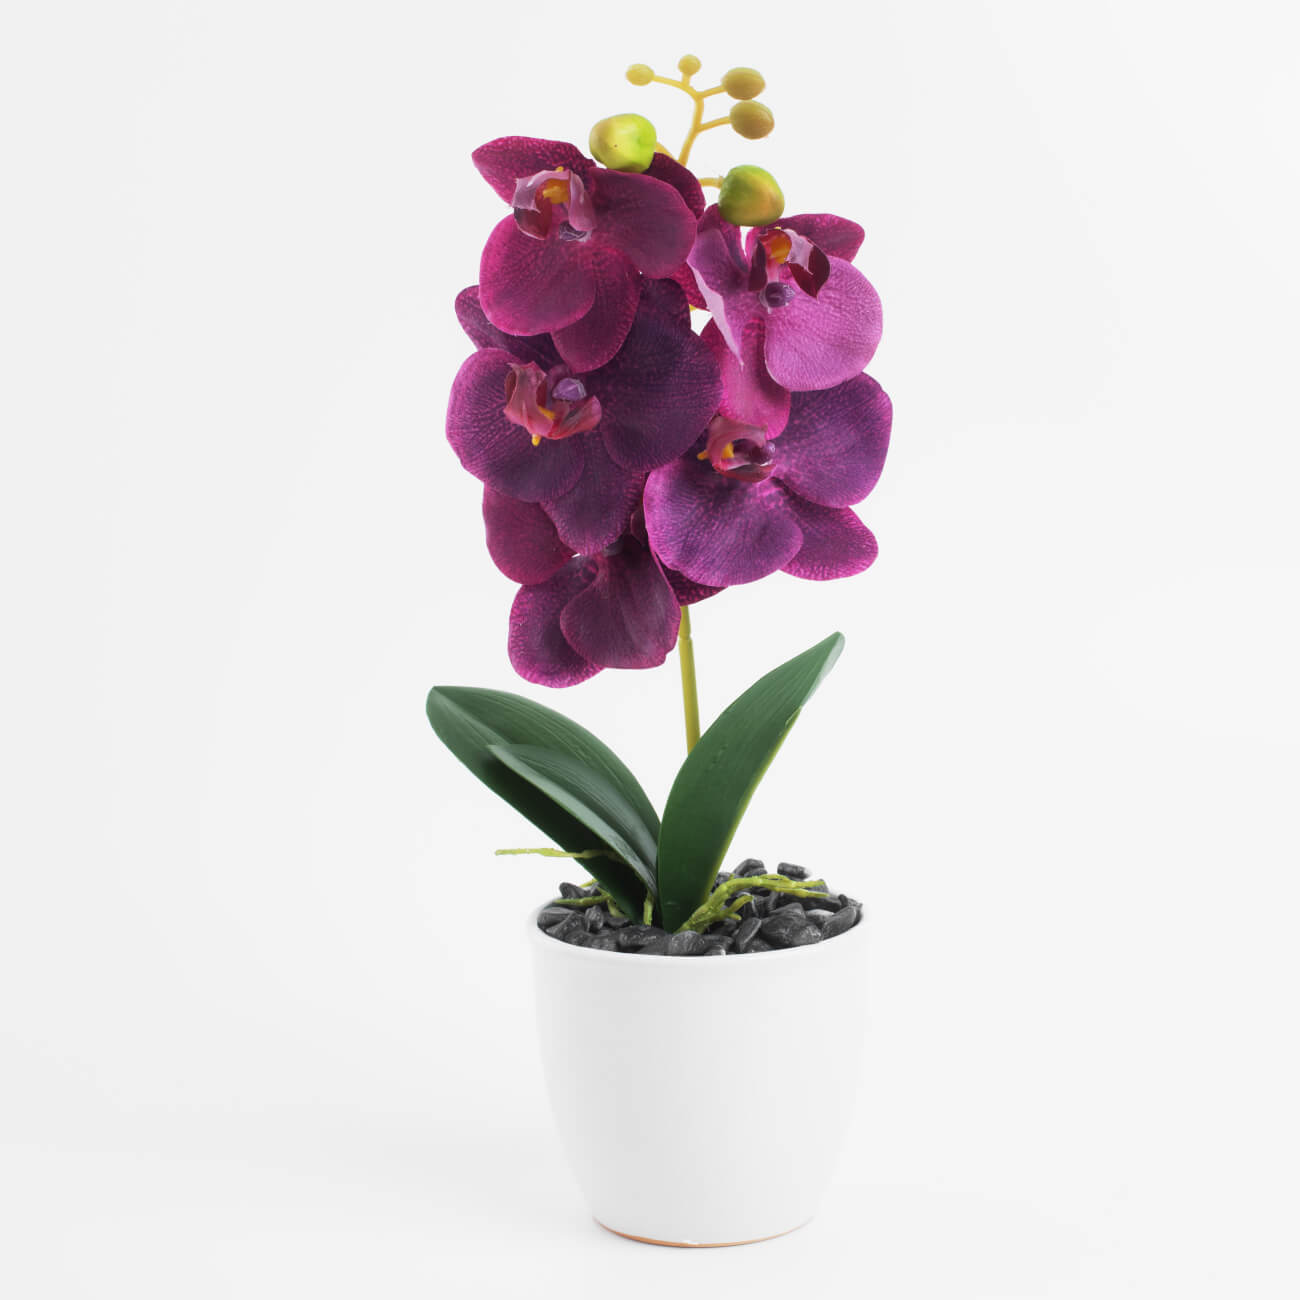 Растение искусственное, 35 см, в горшке, полиэстер/керамика, Розовая орхидея, Orchid laguna растение зелёное амбулия 29 см